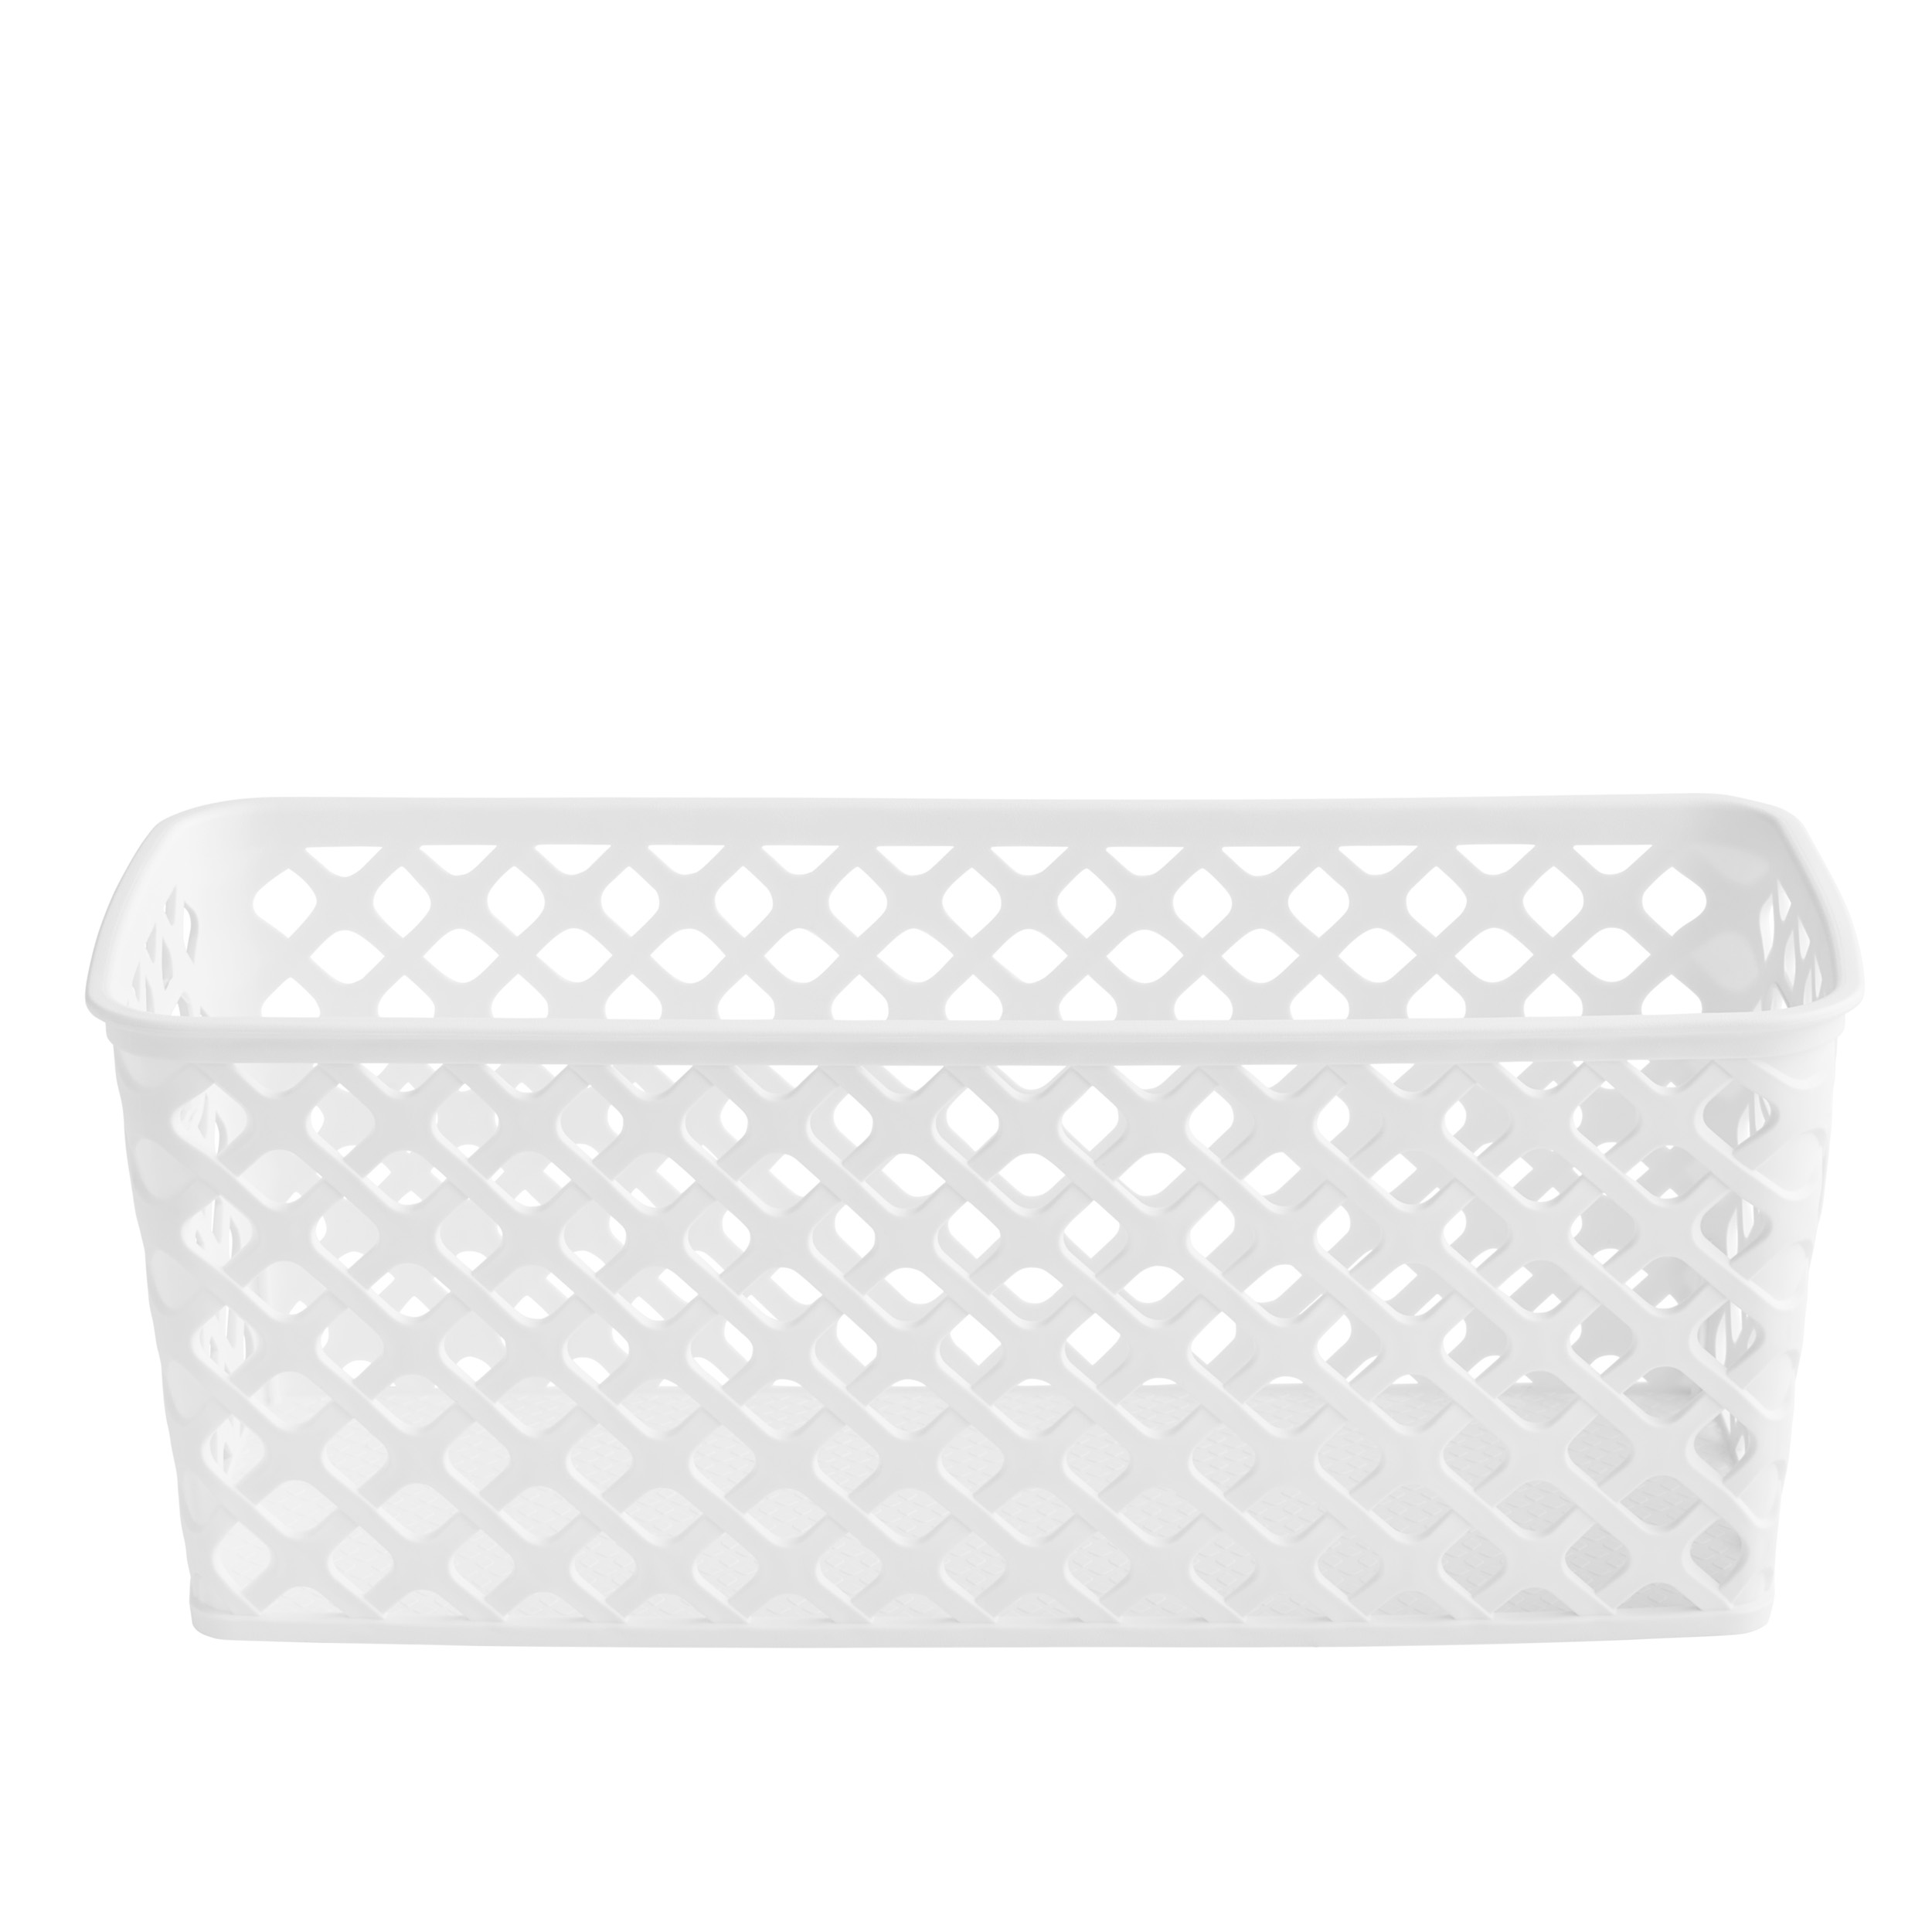 Mainstays Narrow White Decorative Storage Basket - image 1 of 5